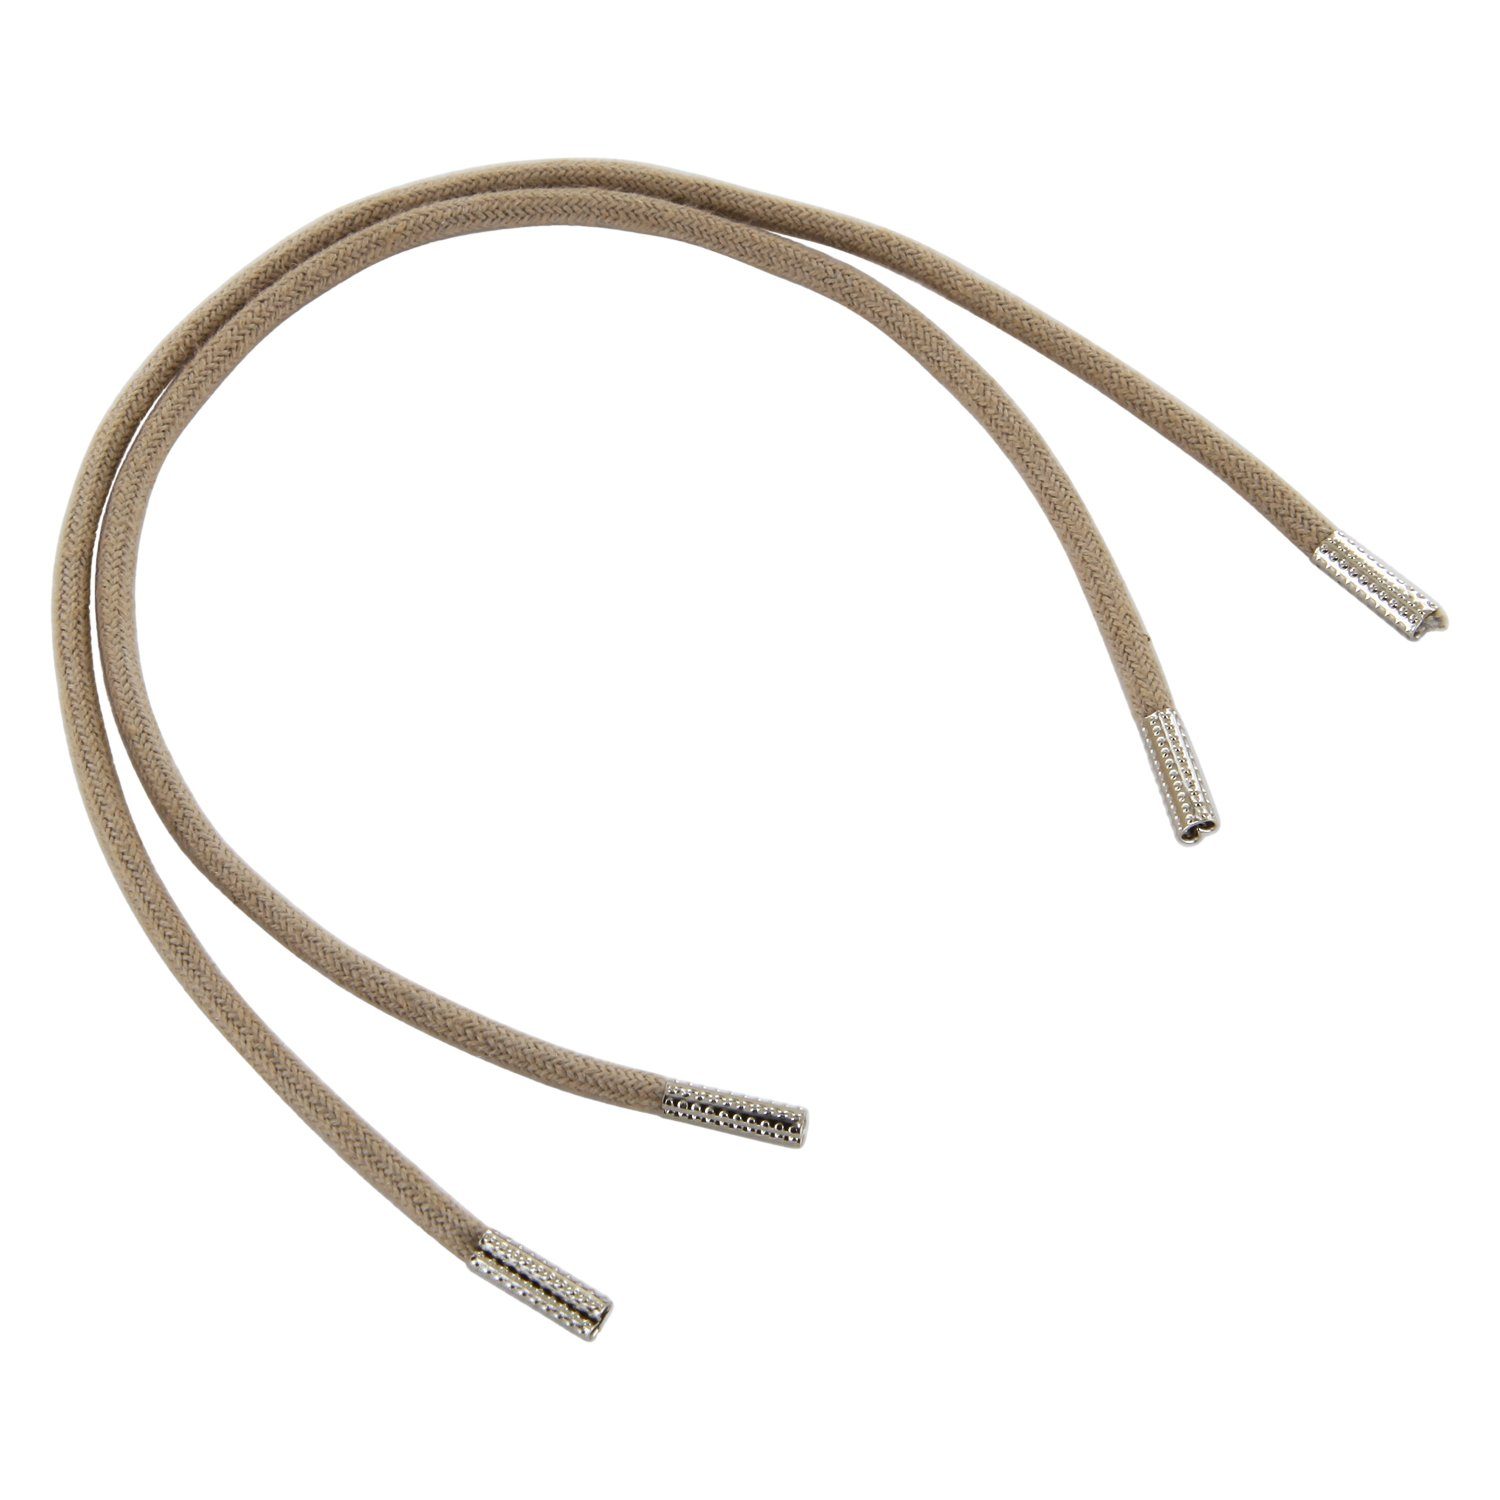 Rema Schnürsenkel Rema Schnürsenkel Hellbeige - rund - ca. 2,5 mm dünn für Sie nach Wunschlänge geschnitten und mit Metallenden versehen | Schnürsenkel